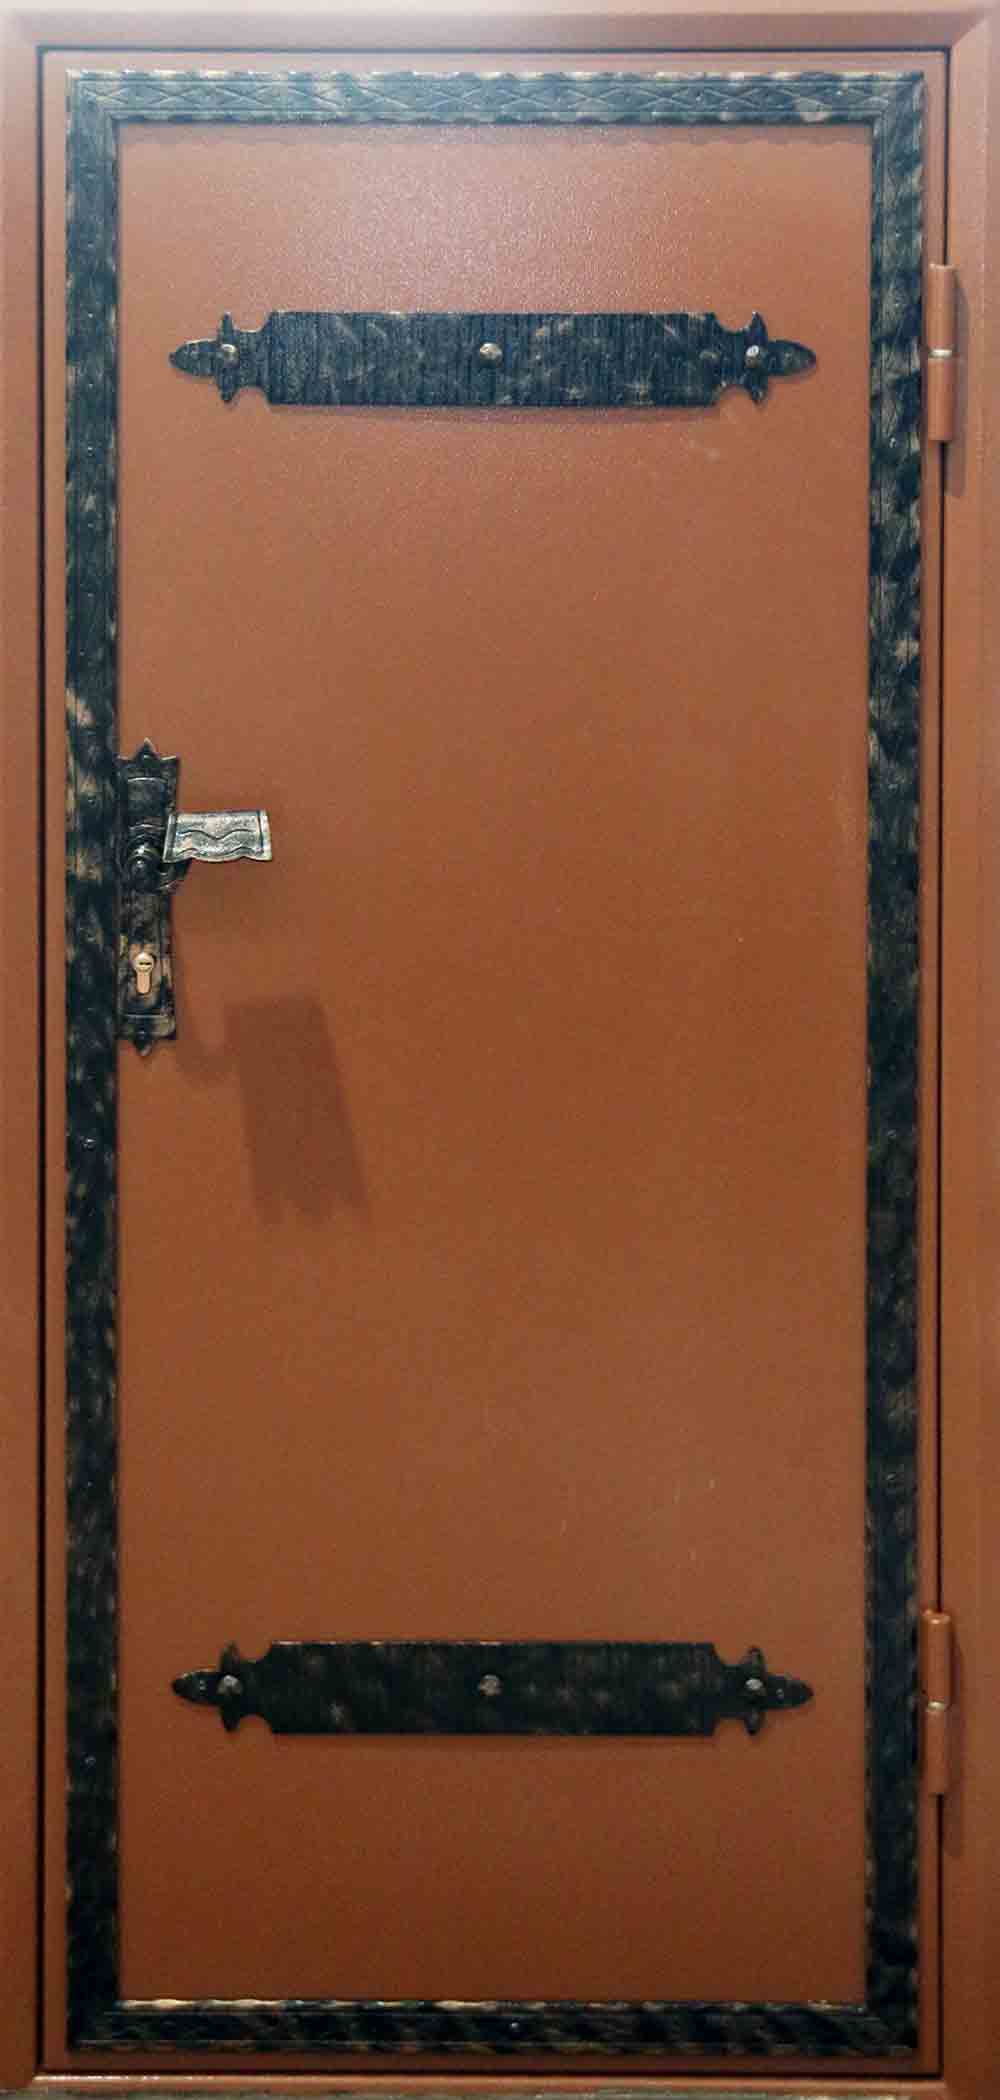 Металлическая входная дверь с коваными элементами